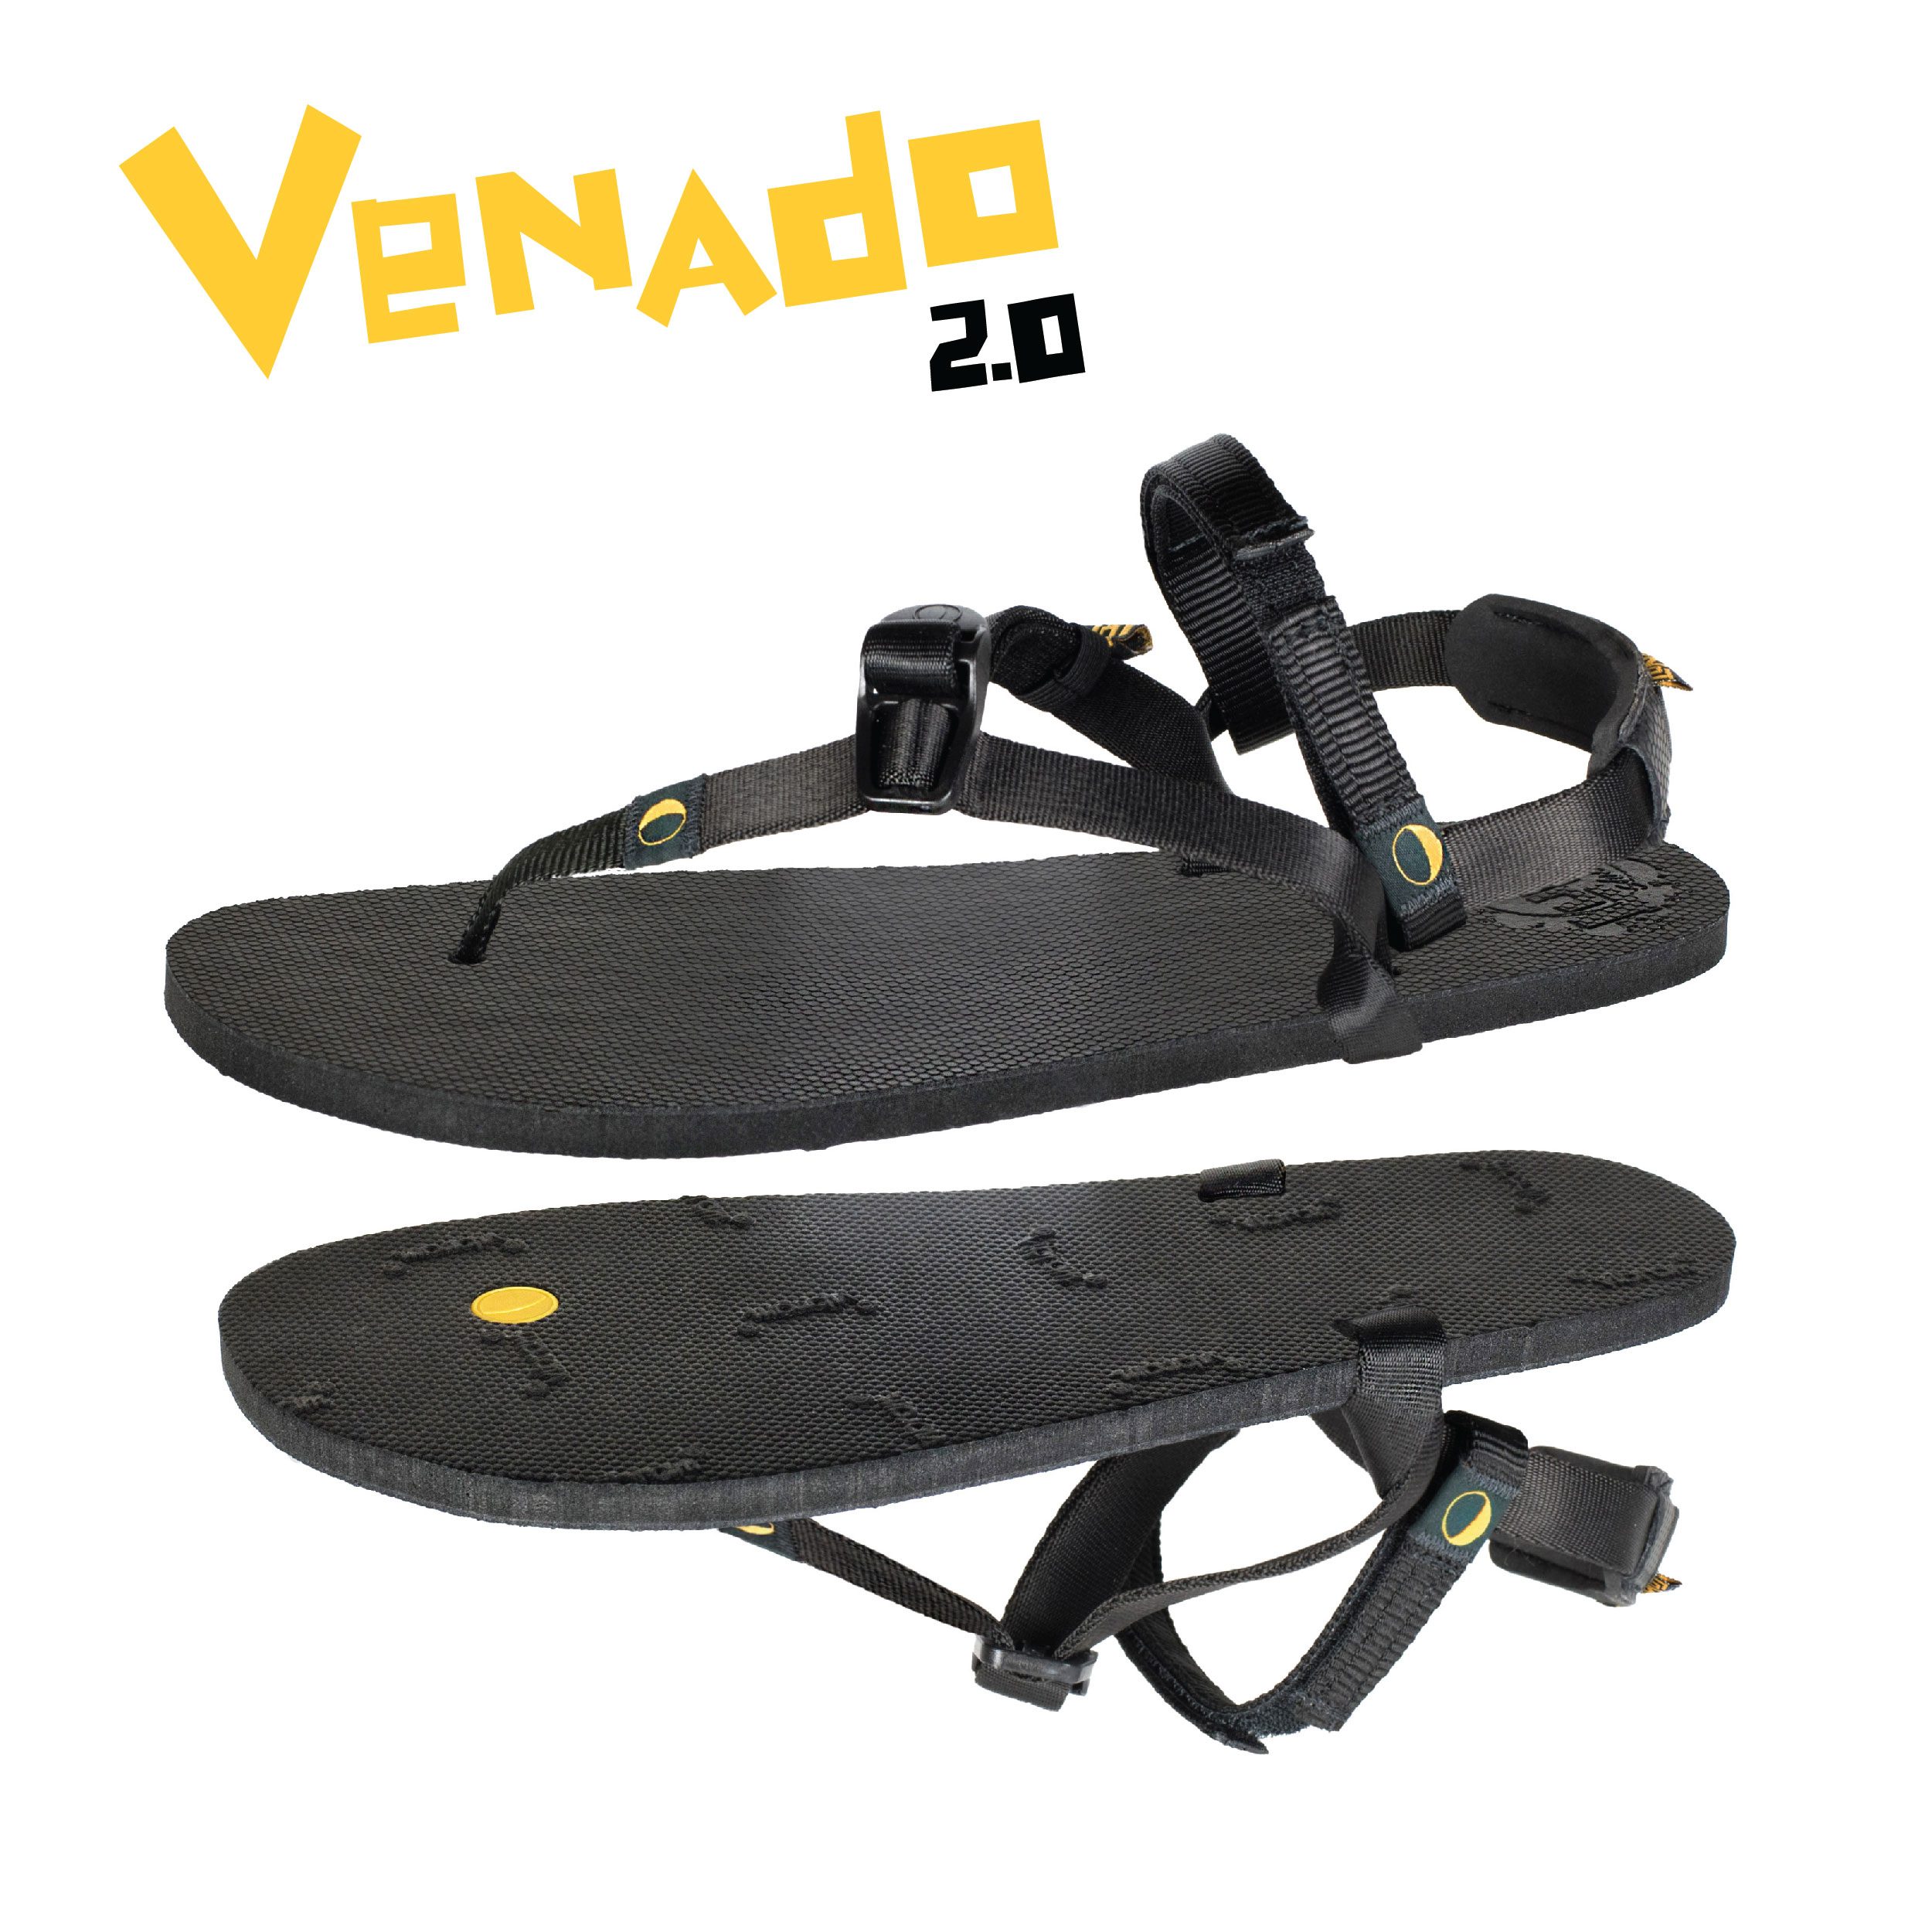 VENADO 2.0